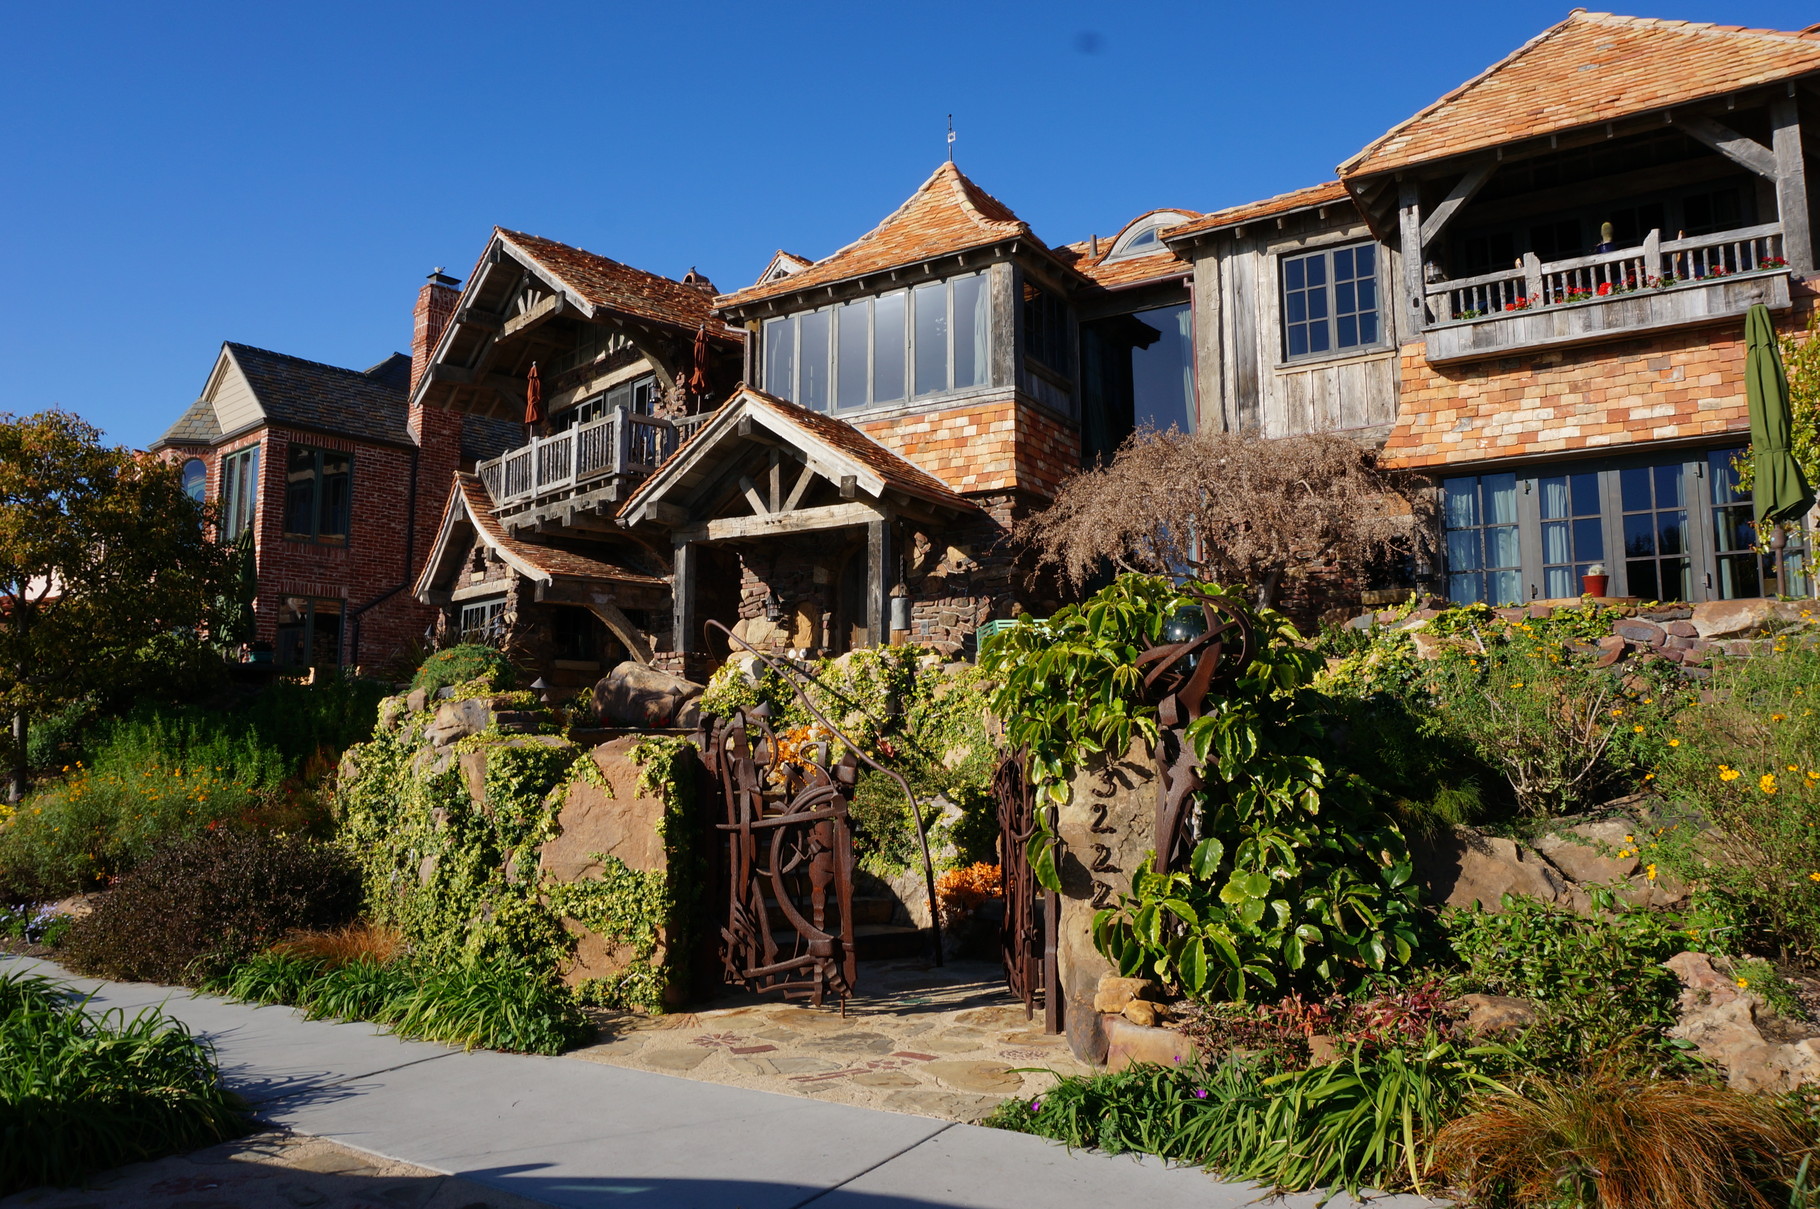 アメリカ庭視察 コロナ デルマーでアメリカの外構や庭のスタイルが色々あることを学ぶ 16 2 21 洋風イングリッシュガーデン お庭 リフォームは柴垣グリーンテック